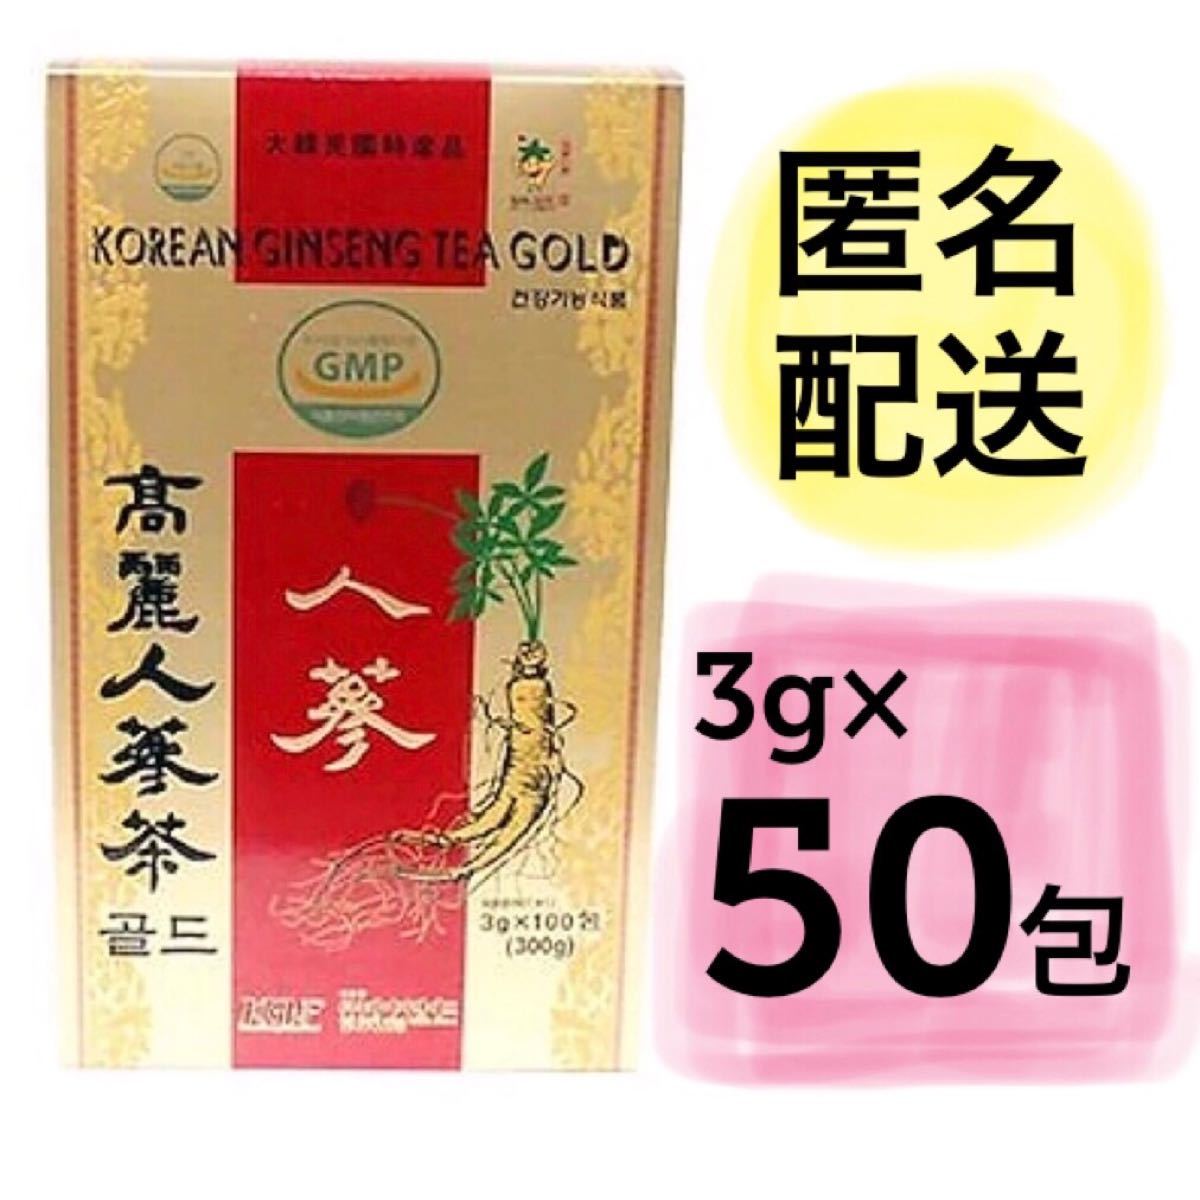 高麗人参茶 ゴールド 3g×50包 